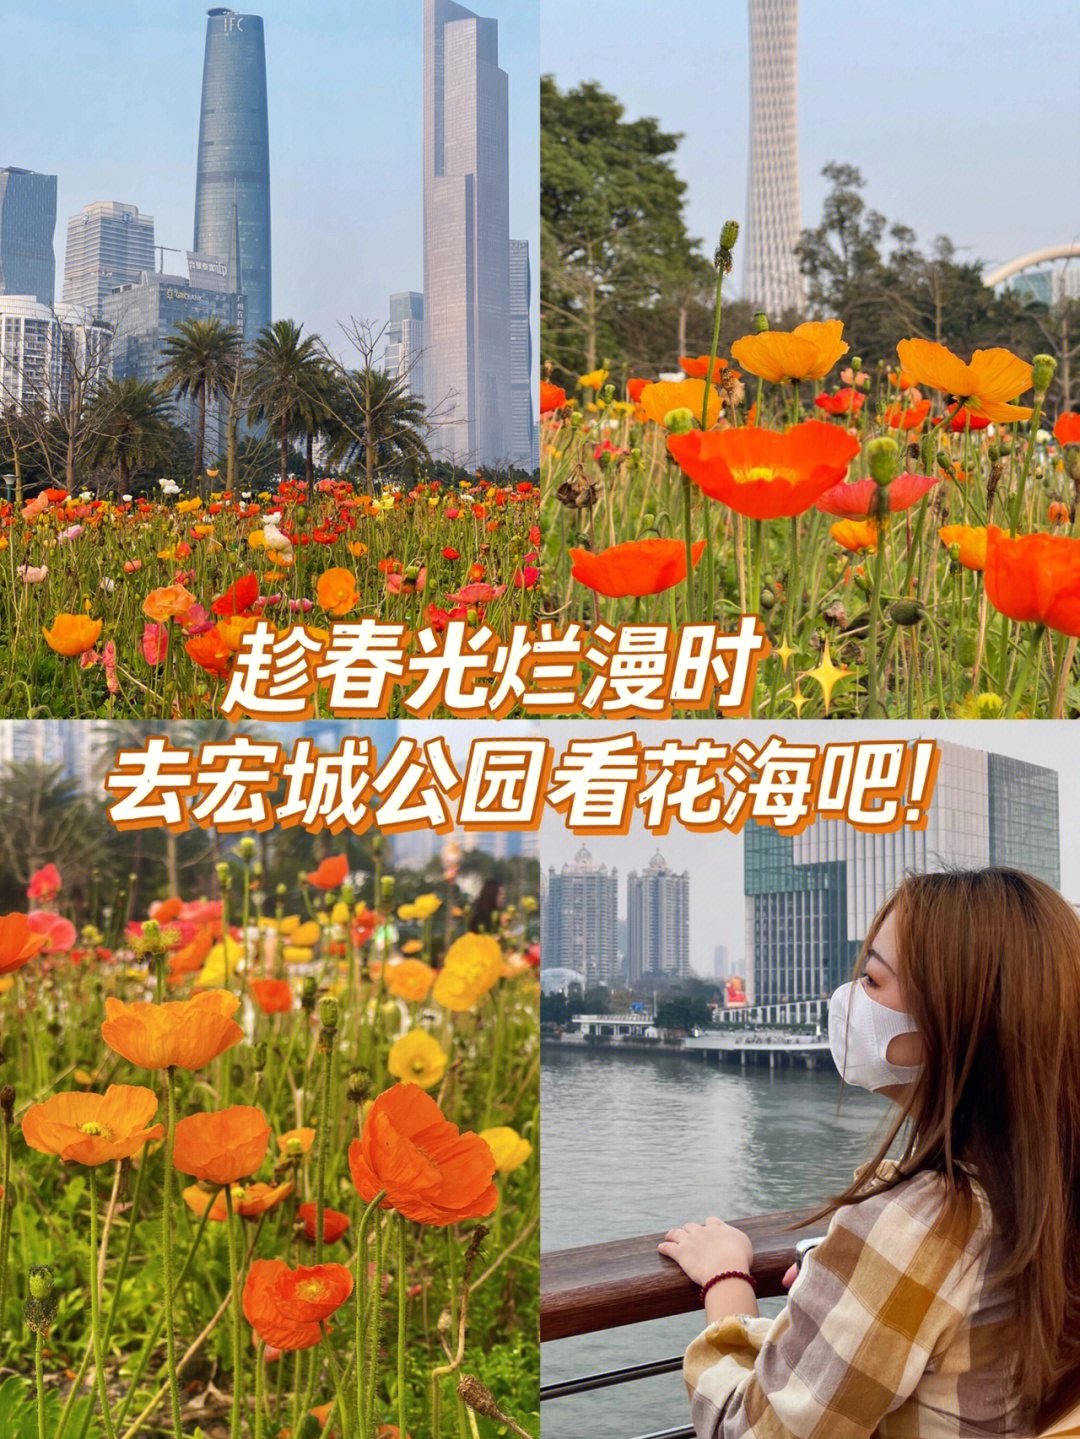 广州赏花趁春光烂漫时去宏城公园看花海